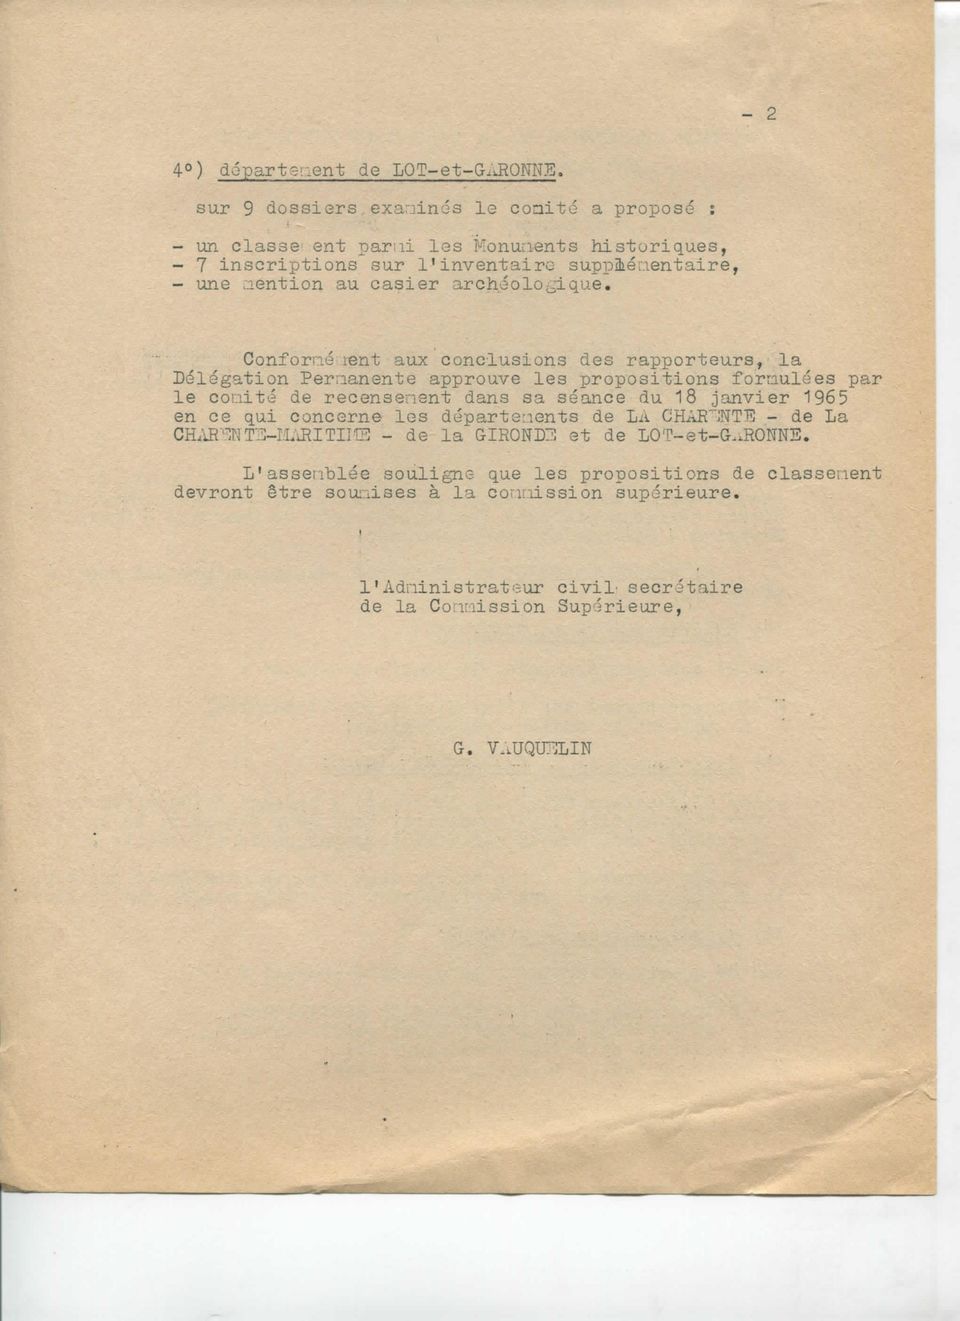 Conforné lent aux conclusions clés rapporteurs, la Délégation Permanente approuve les propositions formulées par le coaité de recenseraient dans sa séance du 18 janvier 1965 en